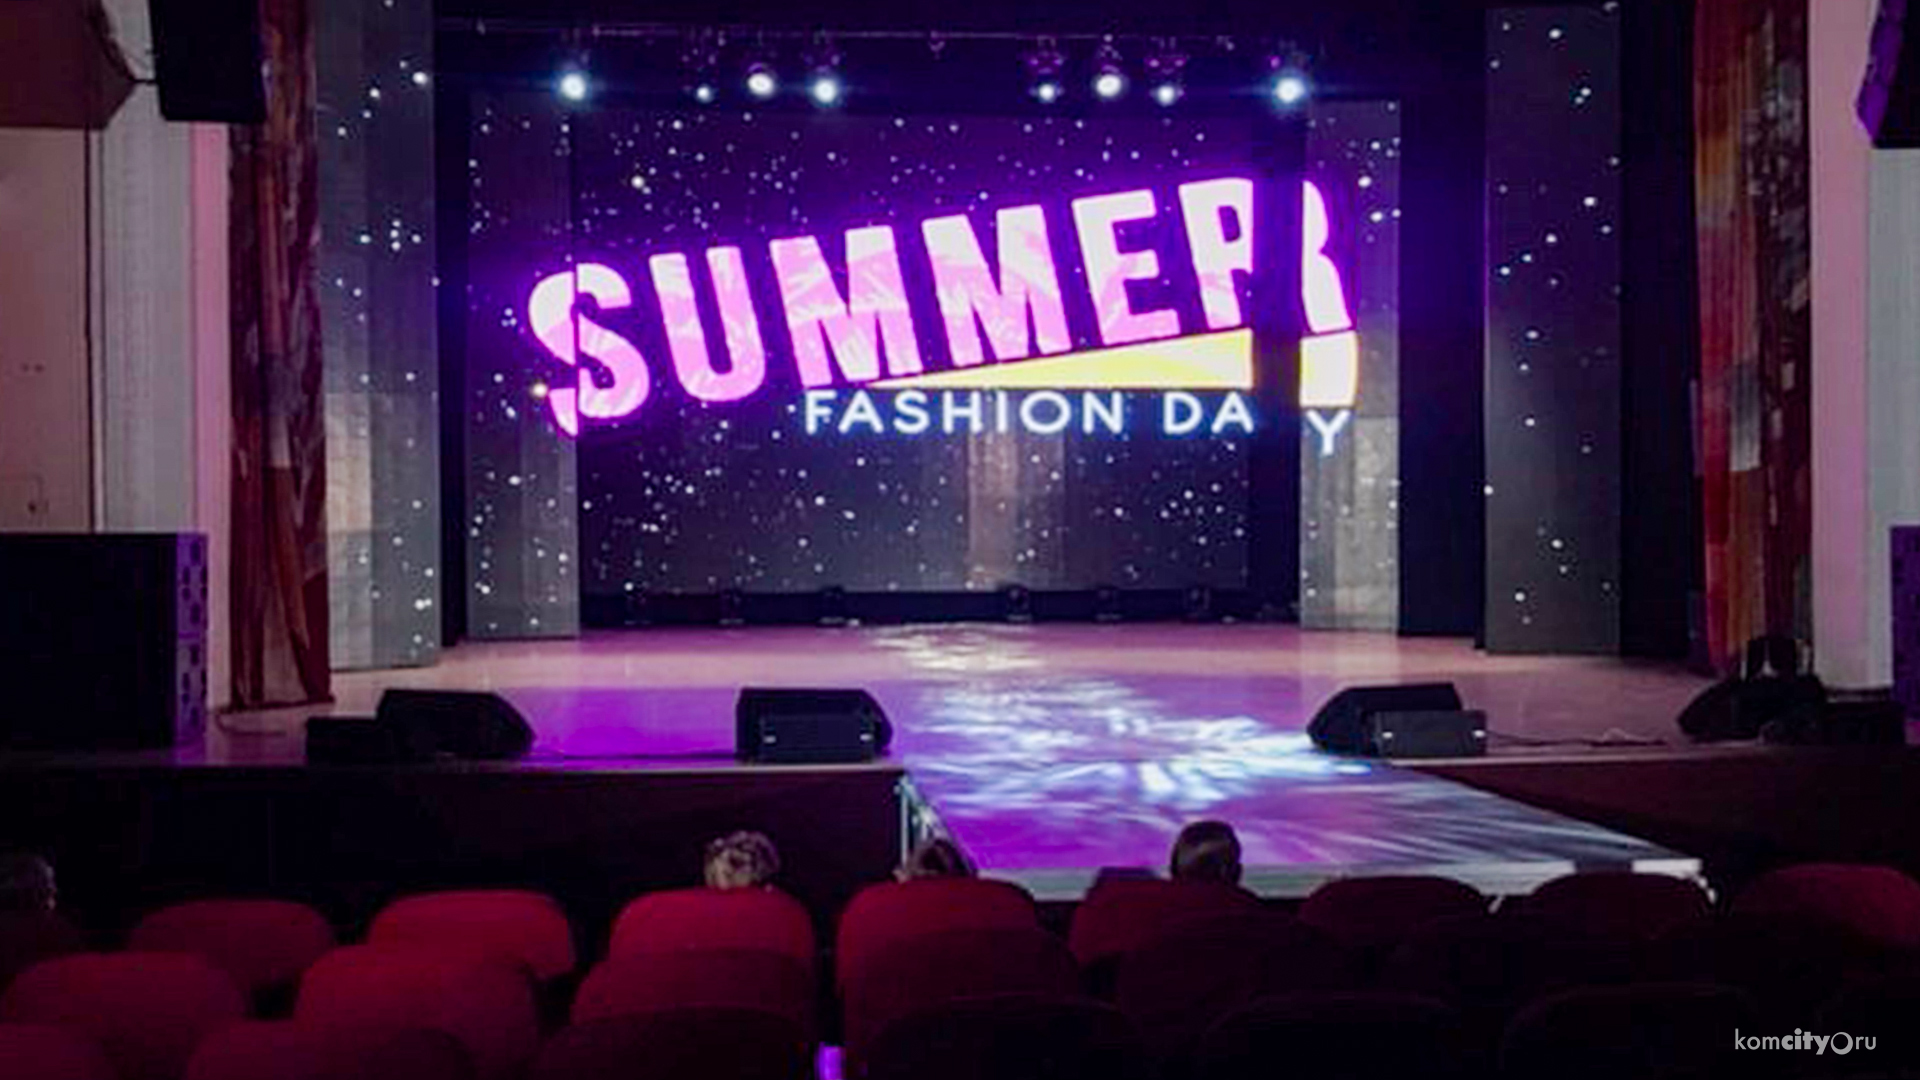 Летний показ мод «Summer Fashion day»пройдёт в воскресенье в ДК Авиастроителей